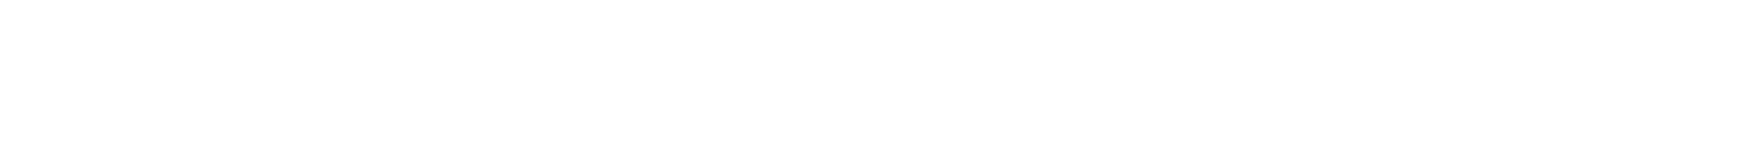 Graphium Logo